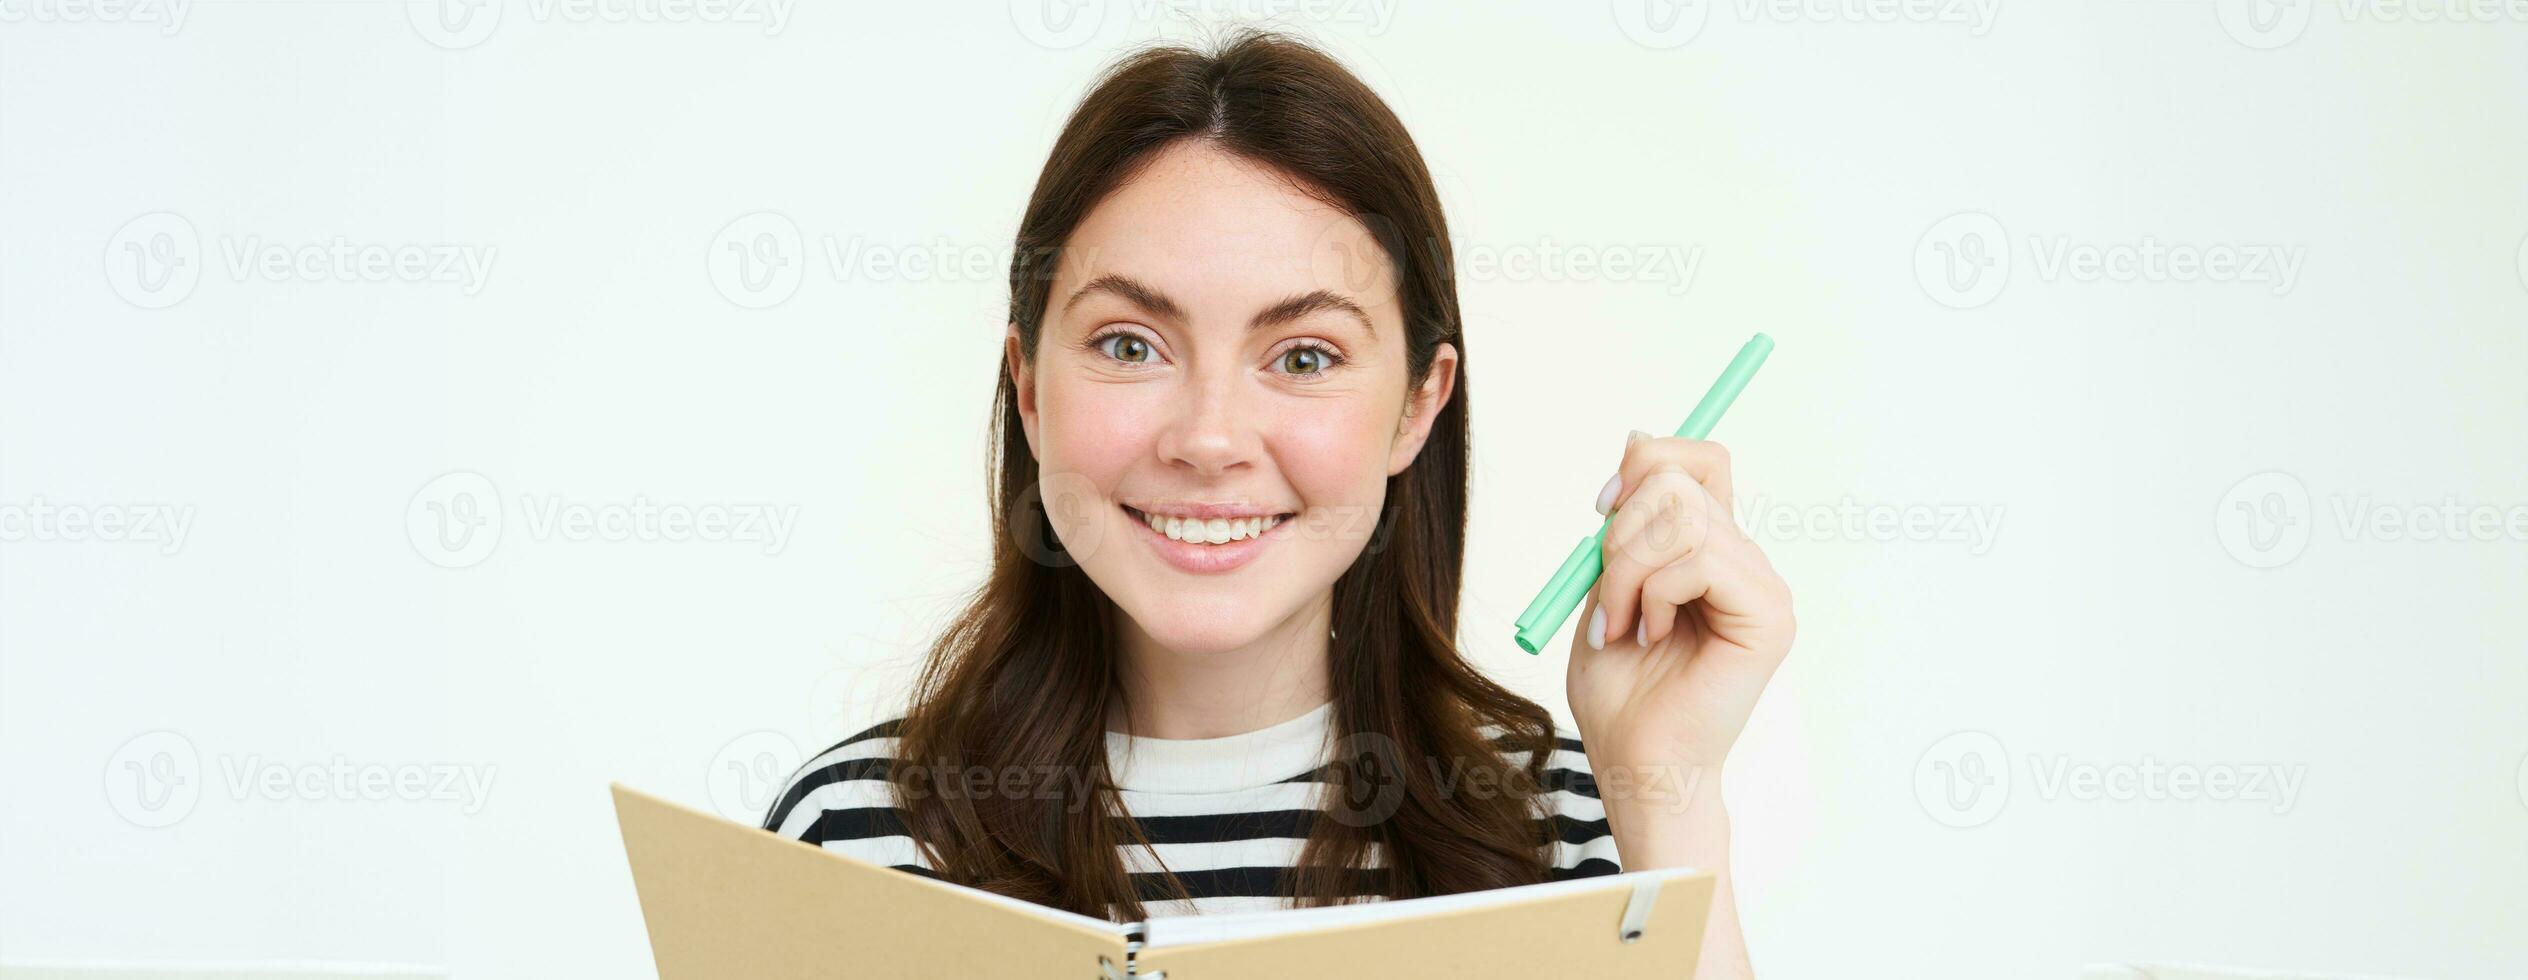 portret van creatief glimlachen meisje, schrijven naar beneden memo's in planner, Holding pen en notitieboekje, maakt notities, staat over- wit achtergrond foto